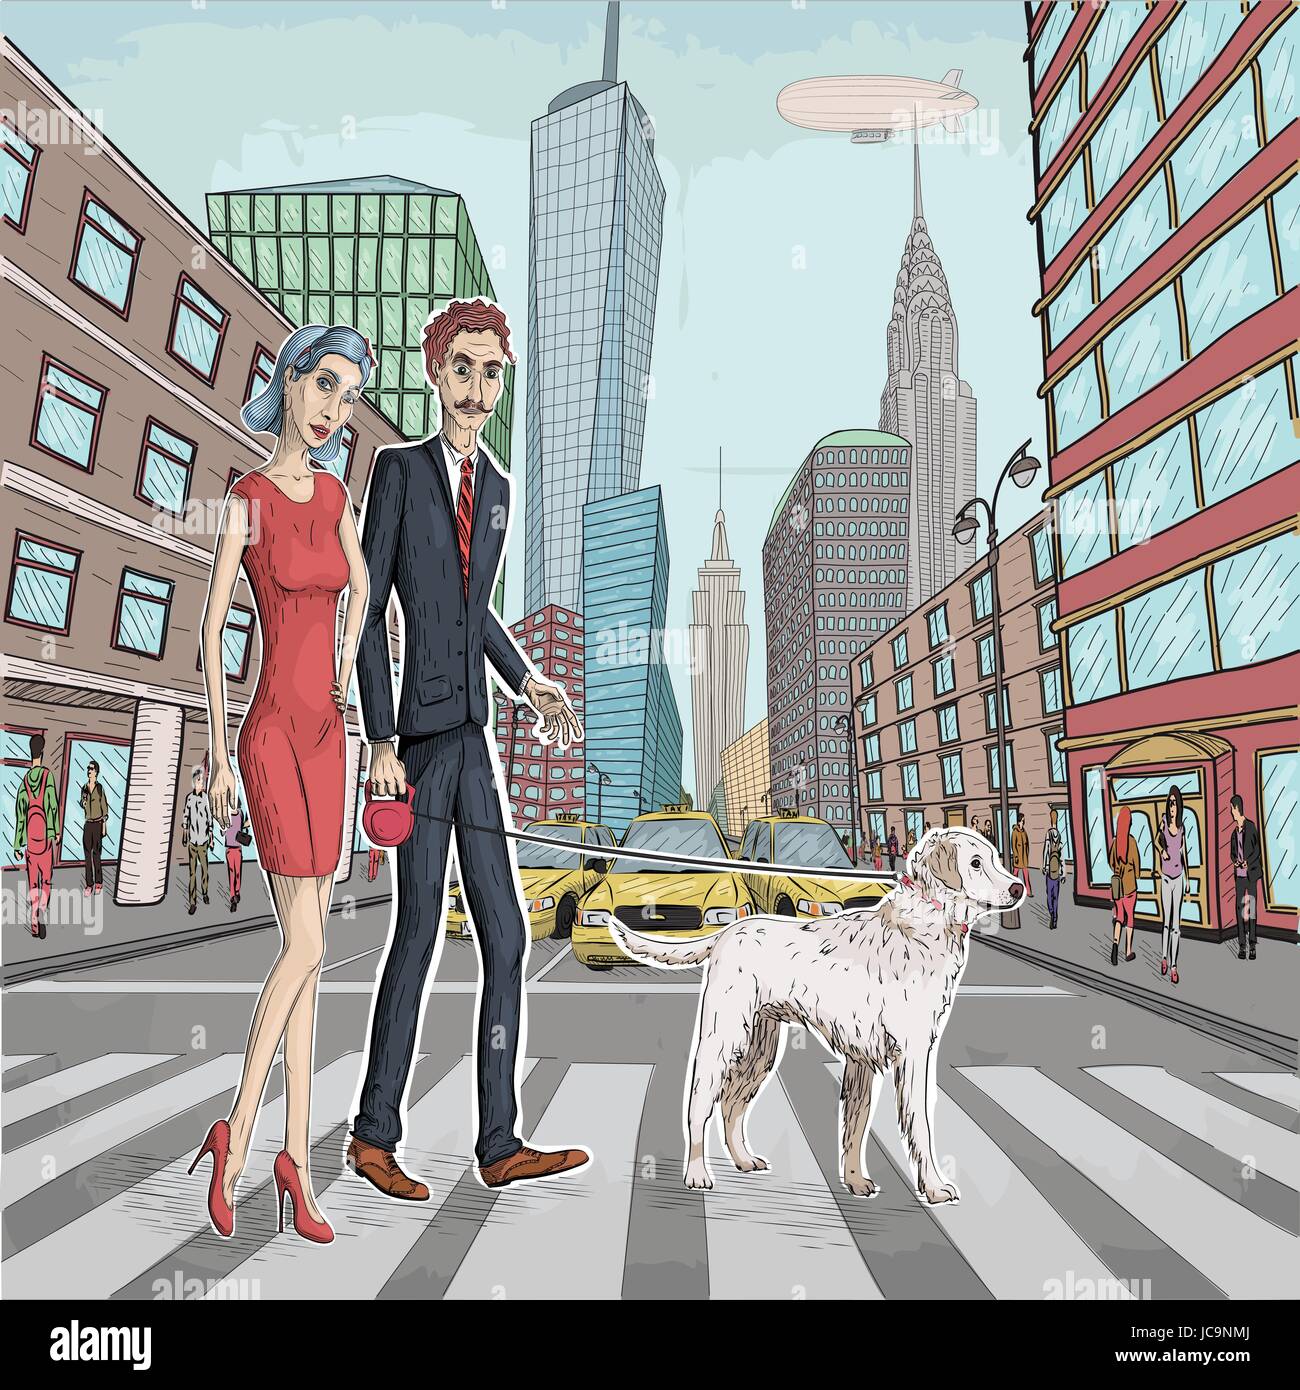 Vector illustration de belle femme fille et les hommes couple amoureux marcher avec chien labrador blanc animal sur New York city street Illustration de Vecteur